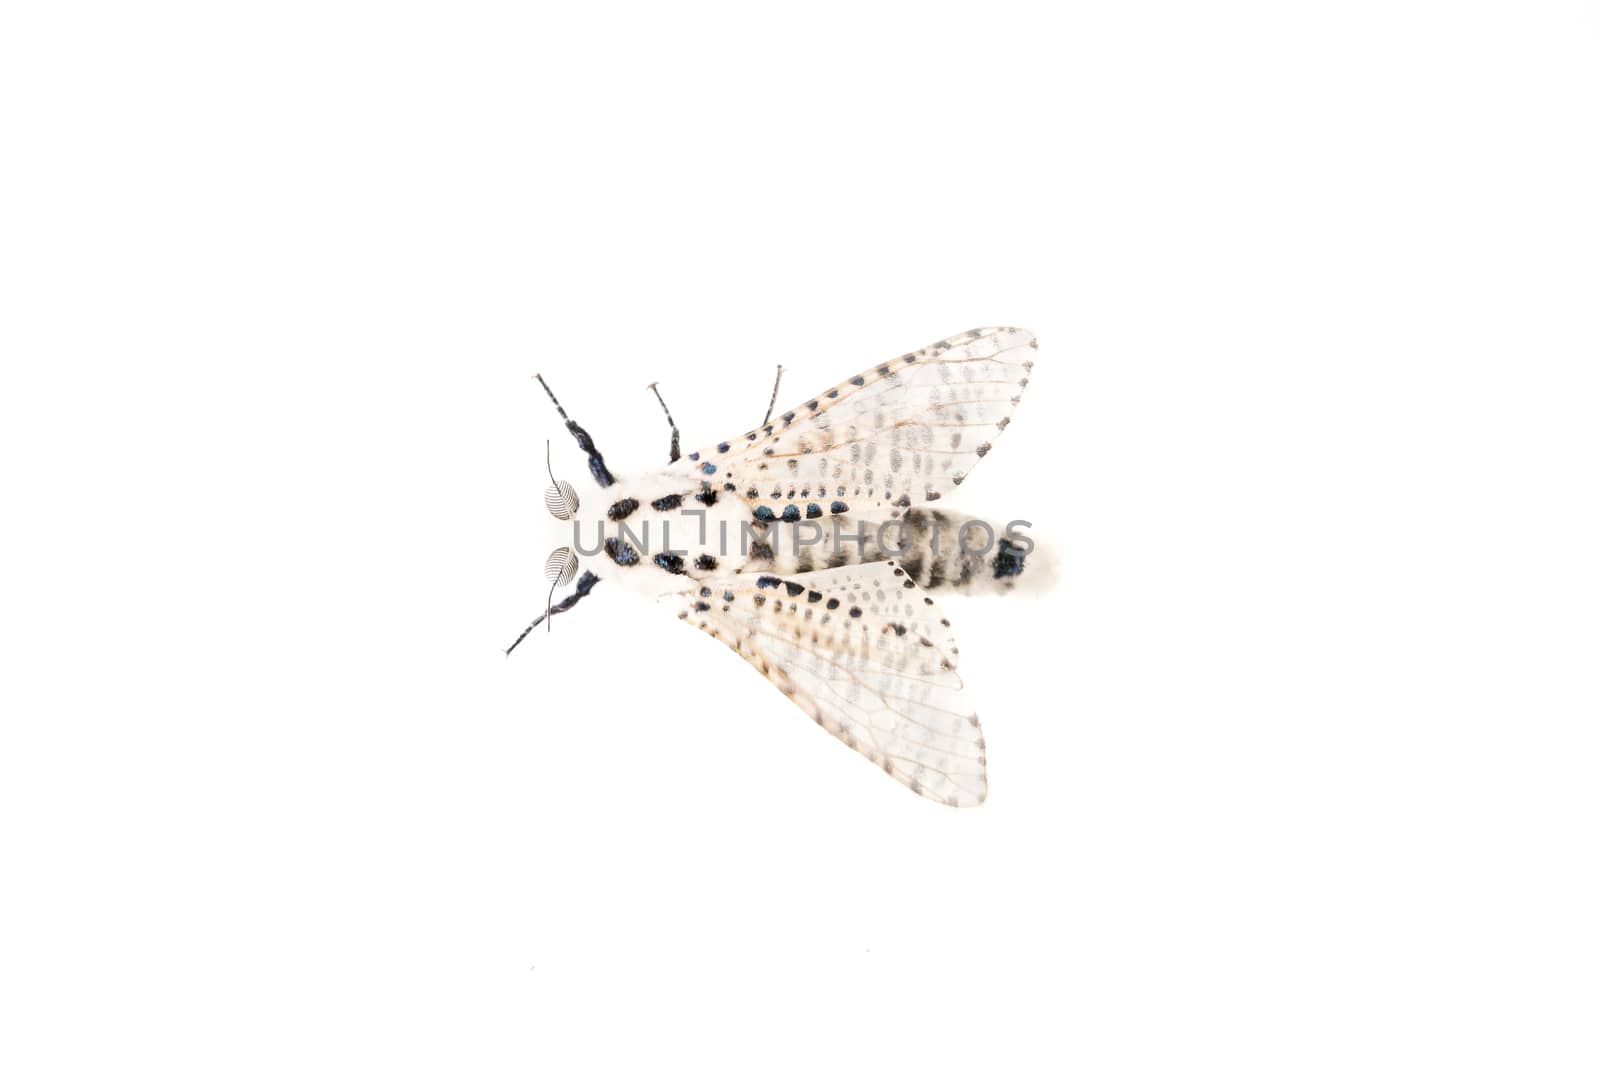 Wood leopard moth Zeuzera pyrina on a white background by neryx